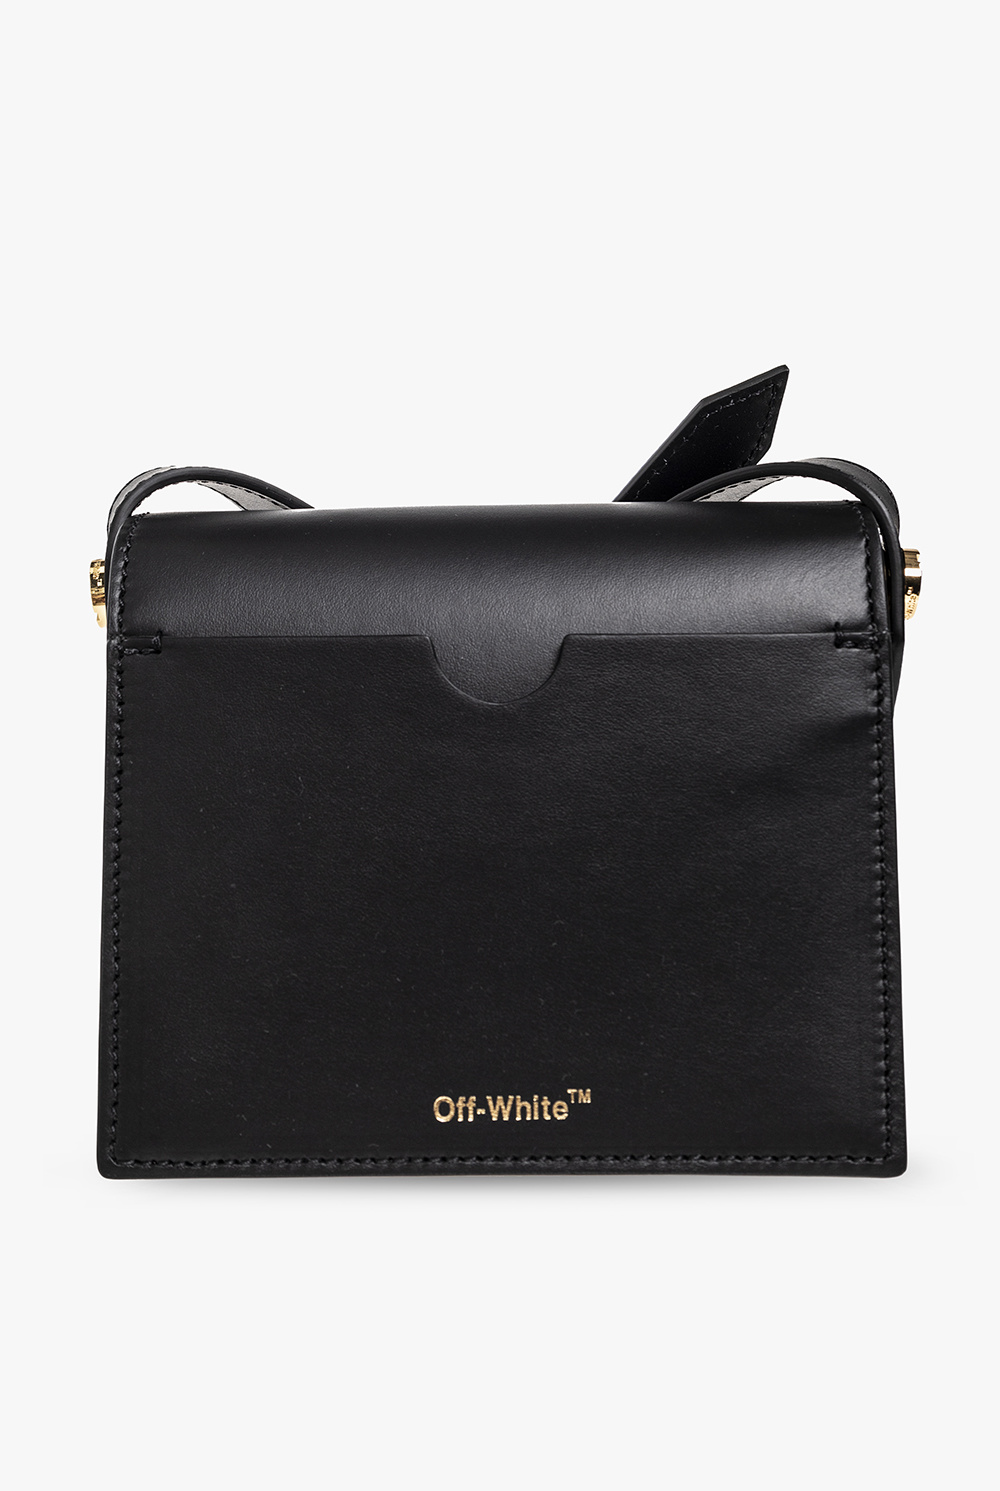 Off-White ‘Cross 18’ handbag